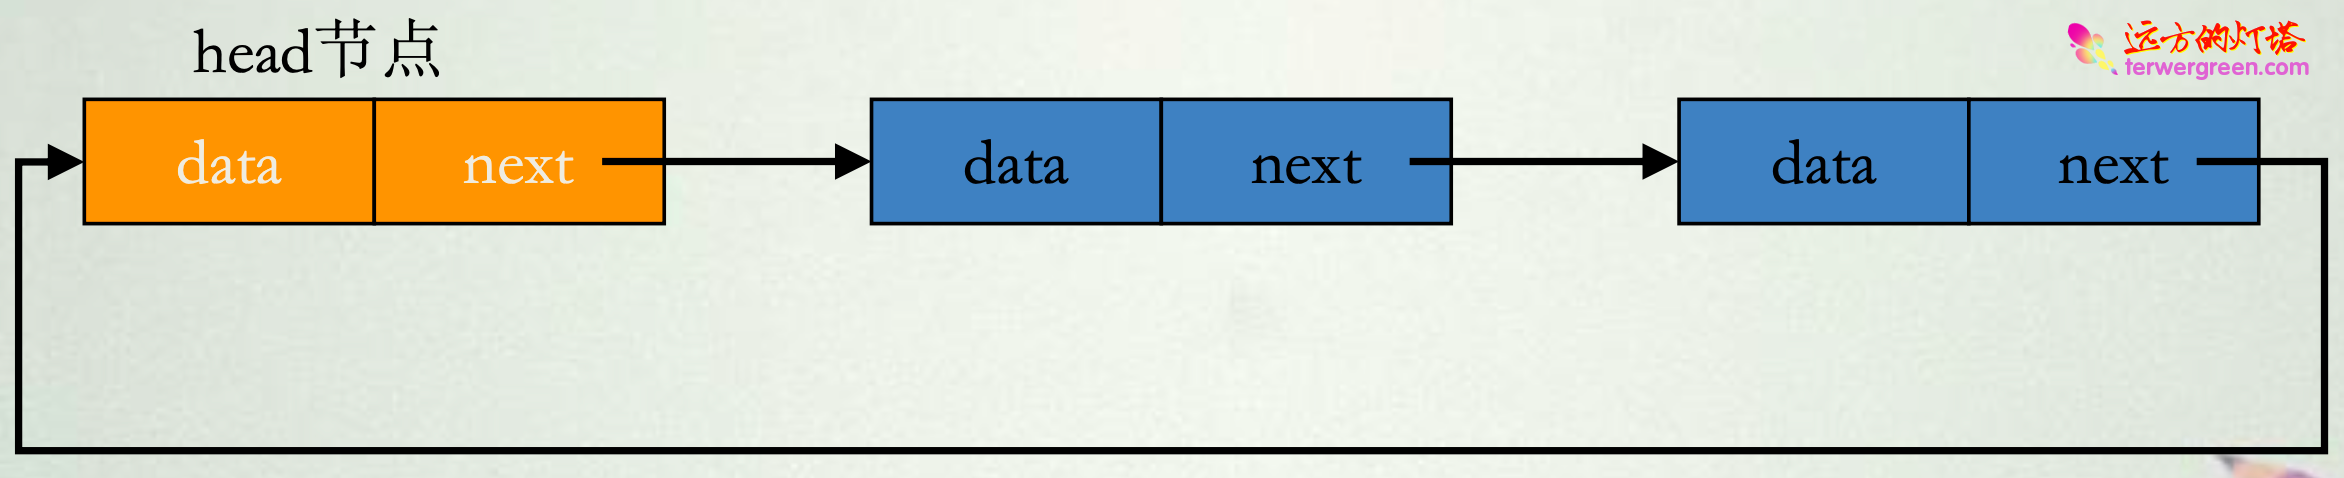 数据结构中的基本结构分析